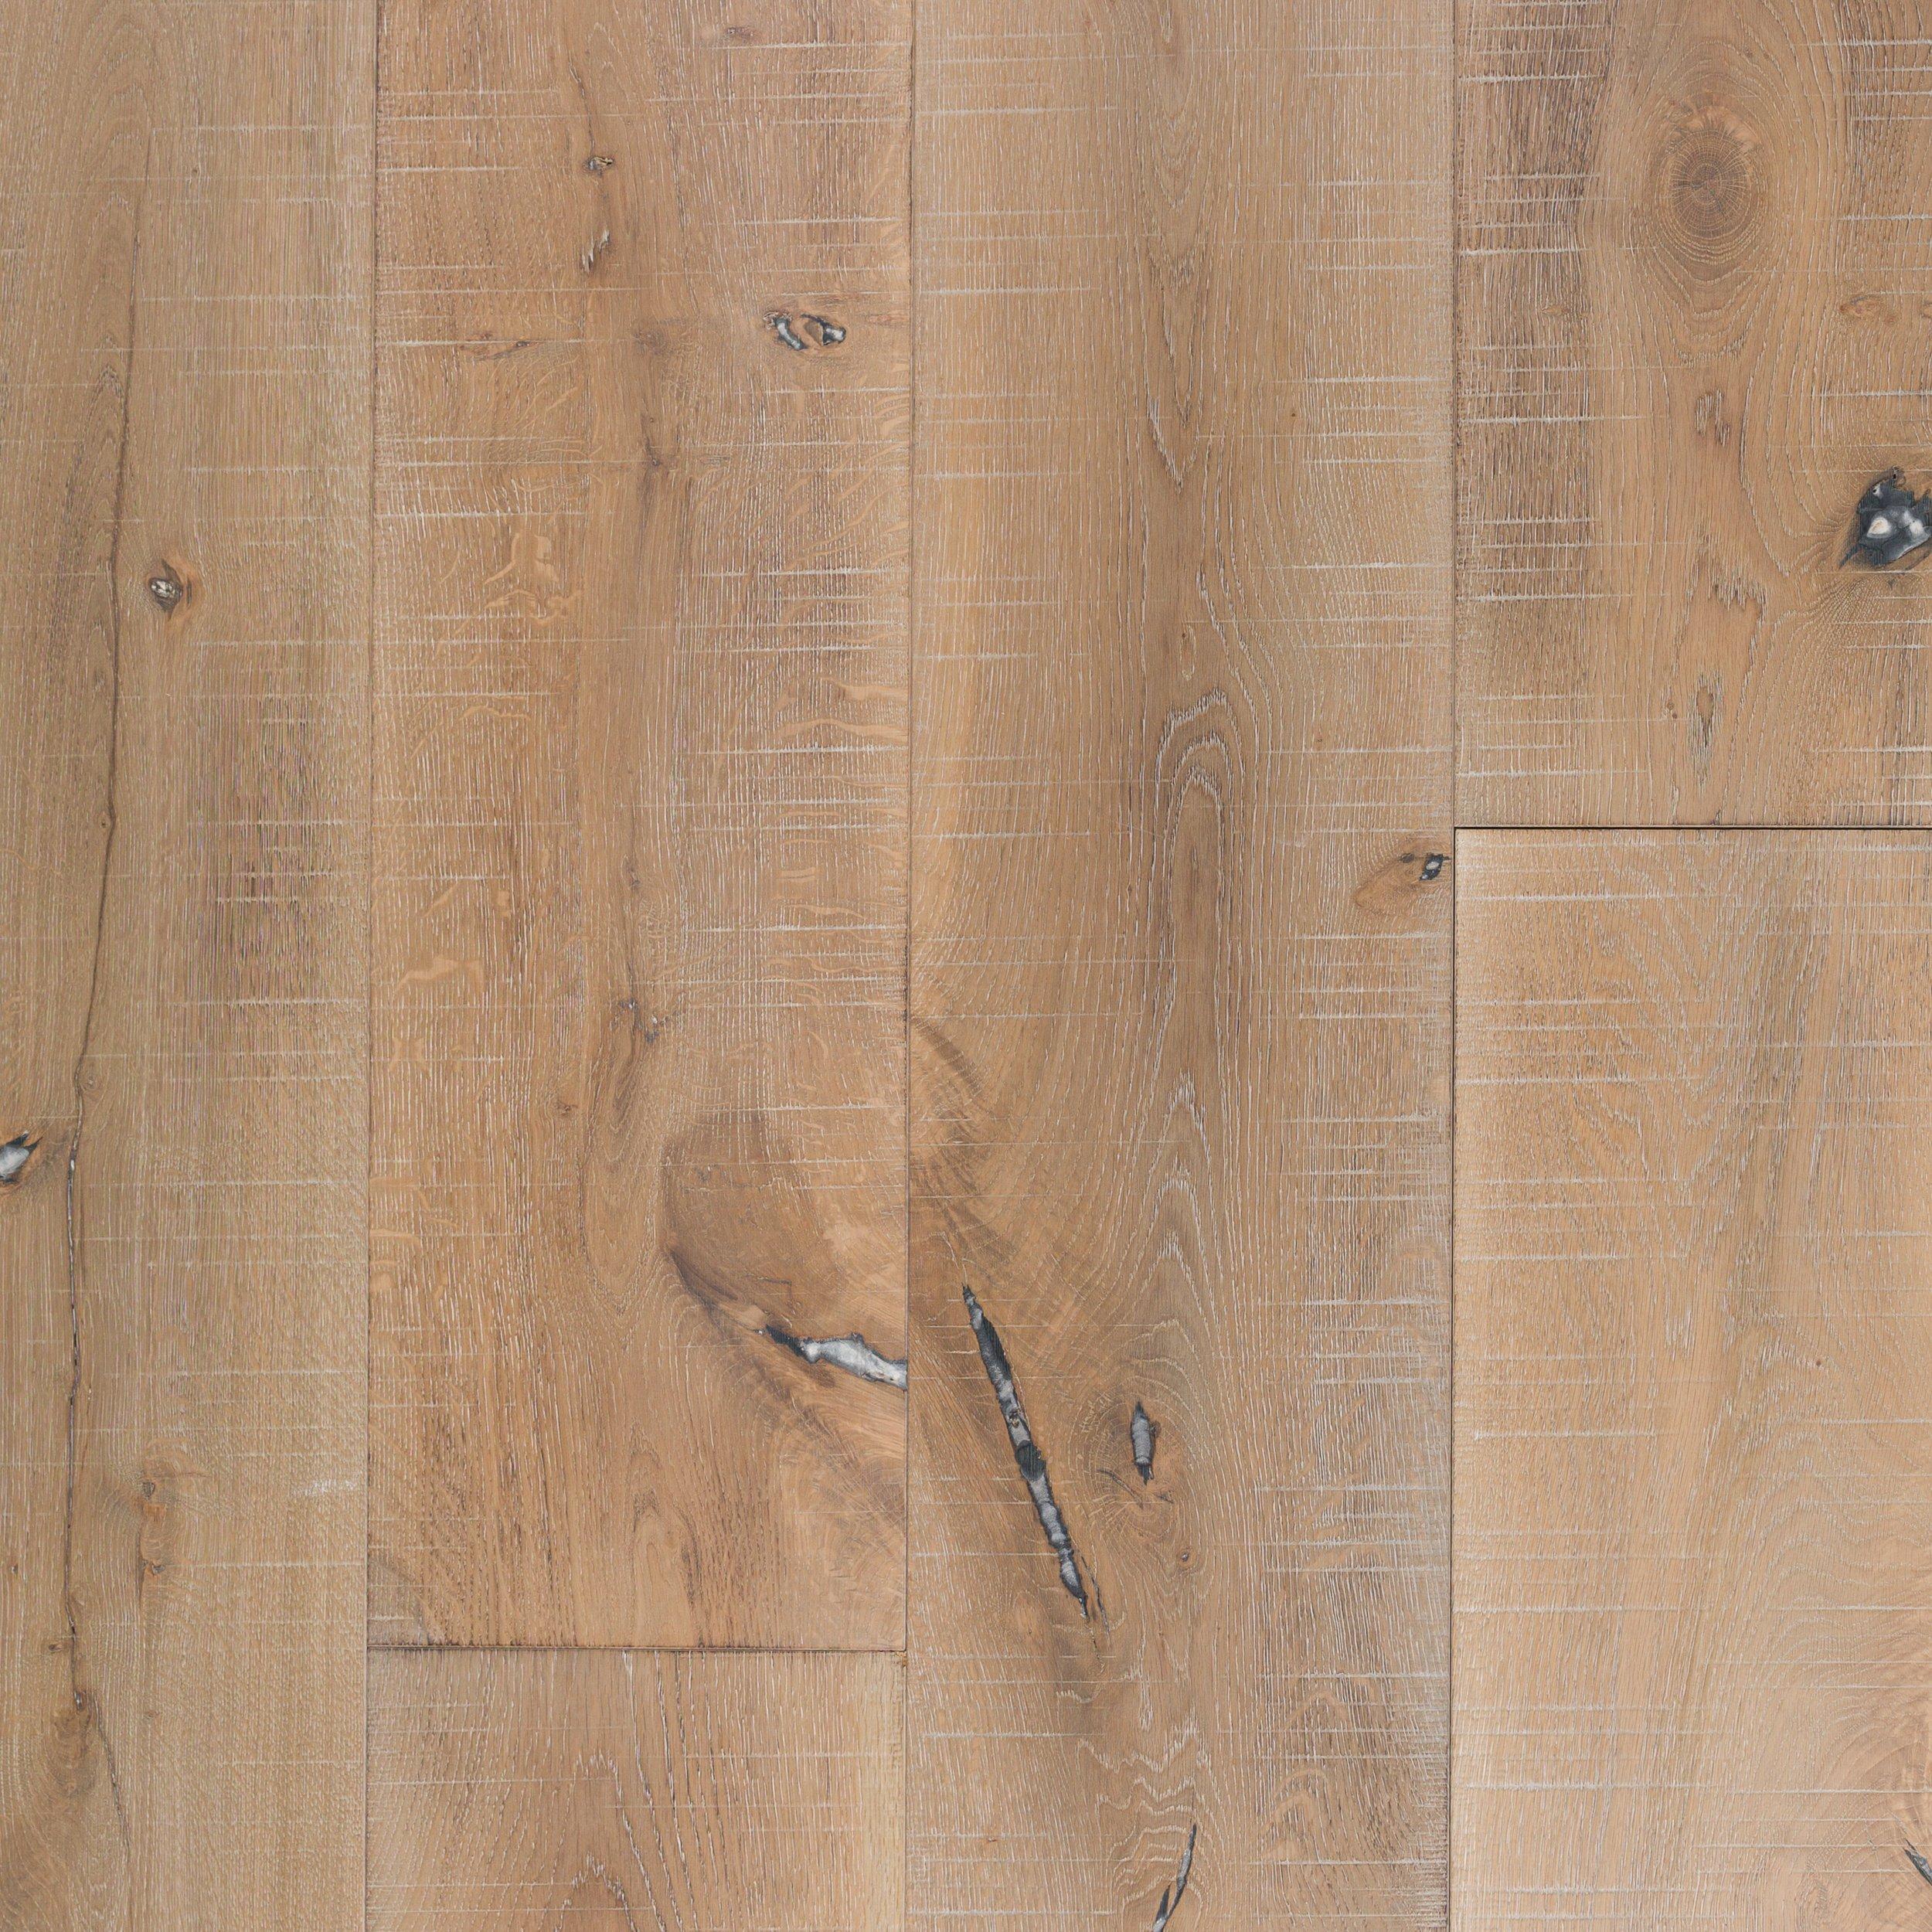 European Oak Rustic Distressed, Floor And Decor Hardwood Floors